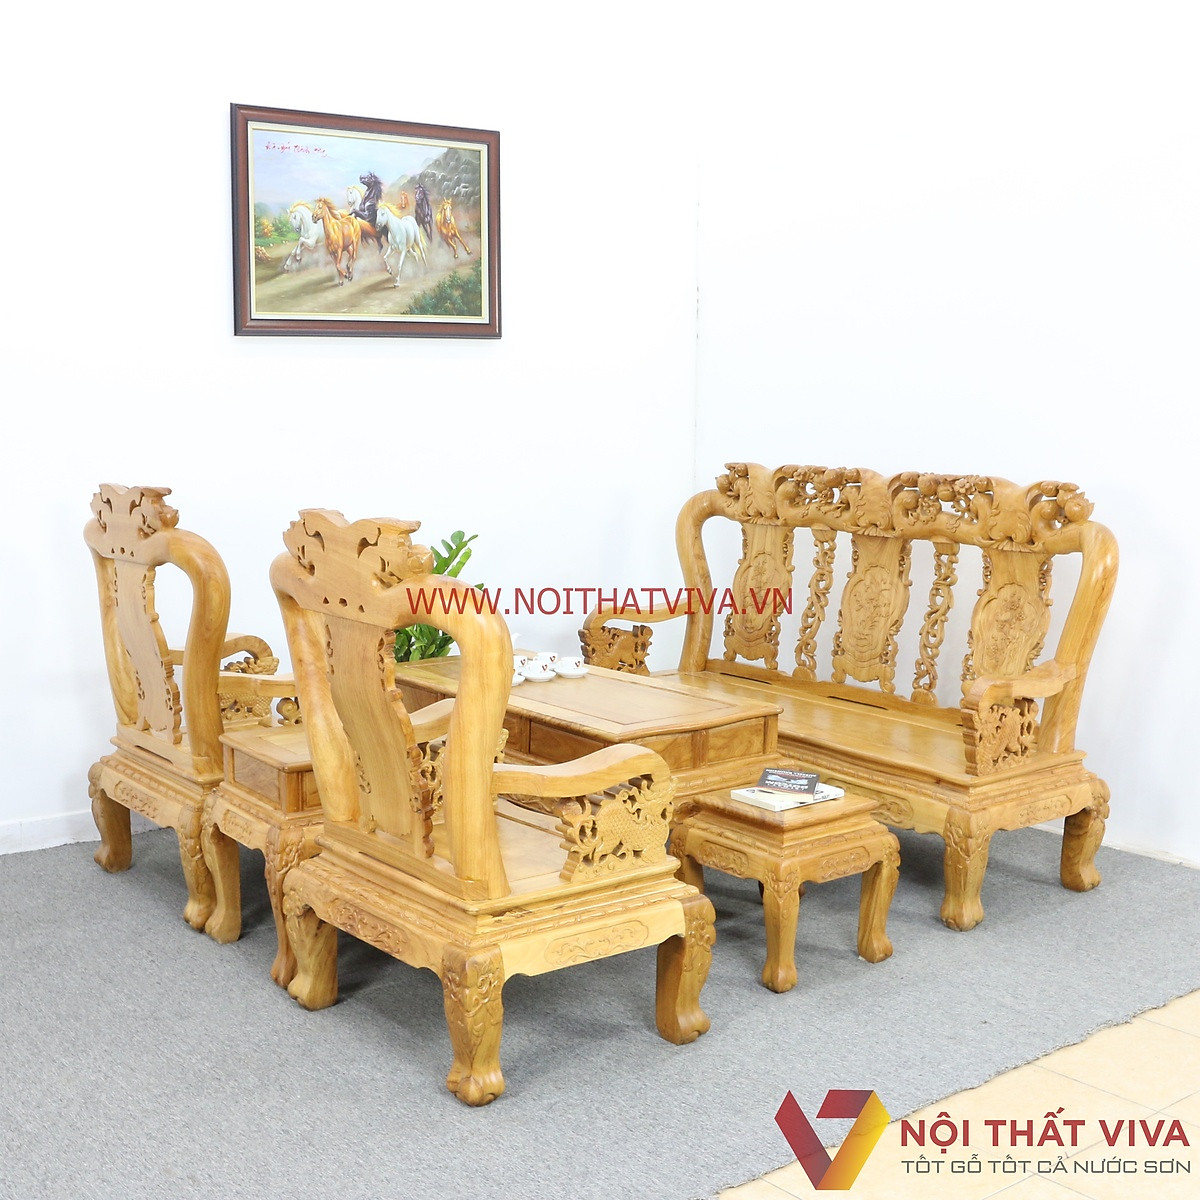 Với bộ bàn ghế phòng khách gỗ, không gian sống của bạn sẽ trở nên sang trọng và đẳng cấp hơn. Bộ bàn ghế được làm từ gỗ tự nhiên đảm bảo độ bền cao và thiết kế đẹp mắt, làm nổi bật phong cách và gu thẩm mỹ của gia chủ.